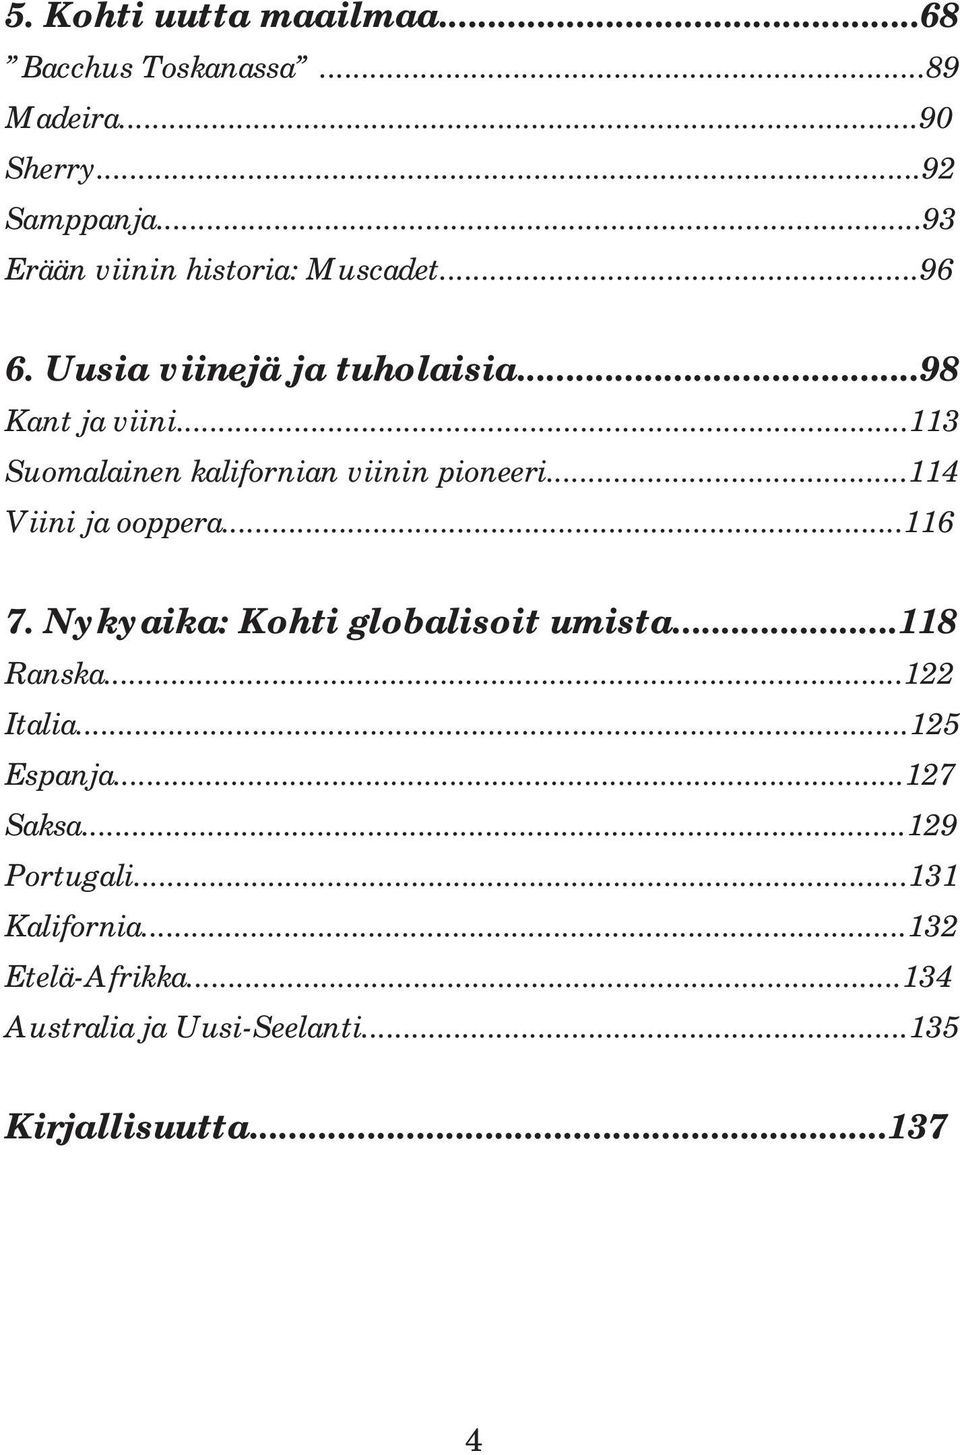 ..113 Suomalainen kalifornian viinin pioneeri...114 Viini ja ooppera...116 7. Nykyaika: Kohti globalisoit umista.